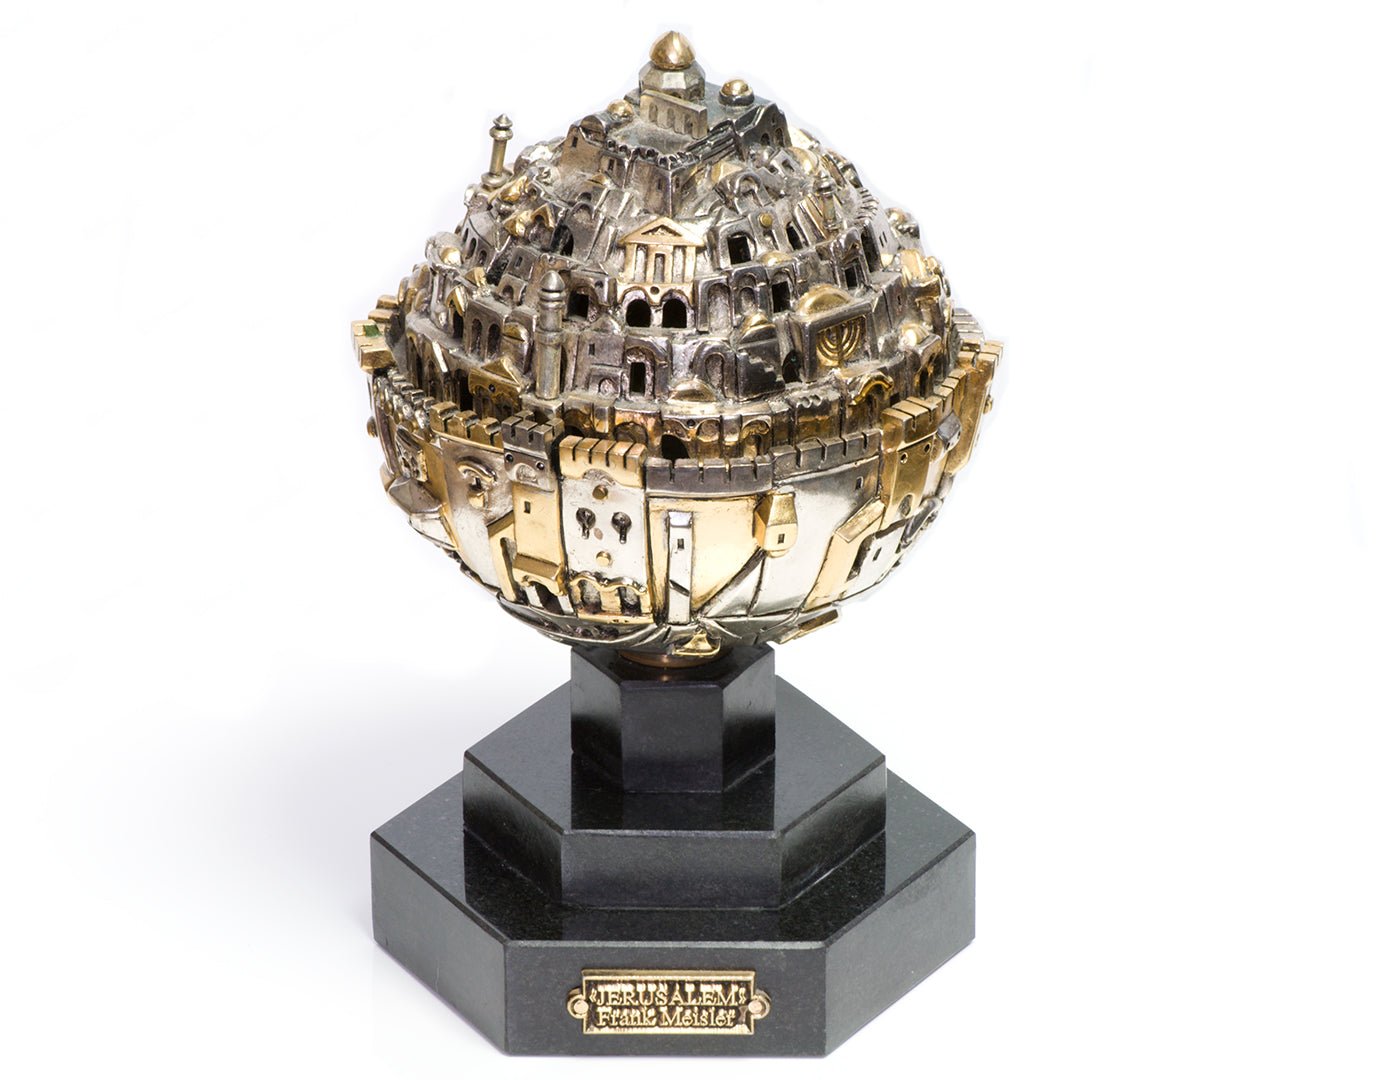 Frank Meisler Jerusalem Sphere Limited Edition